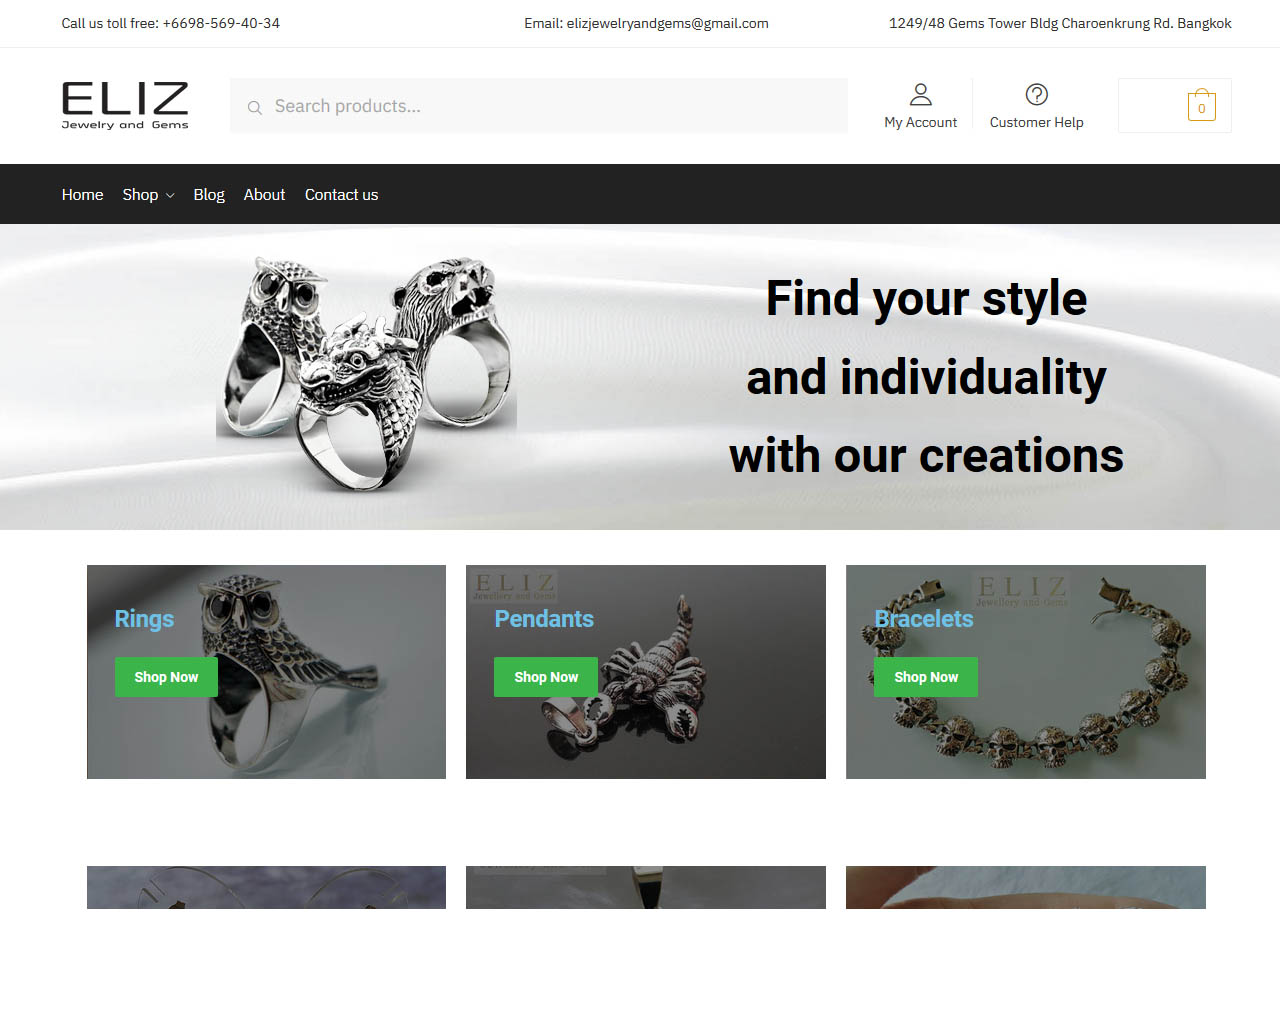 Jewelry site "Eliz"